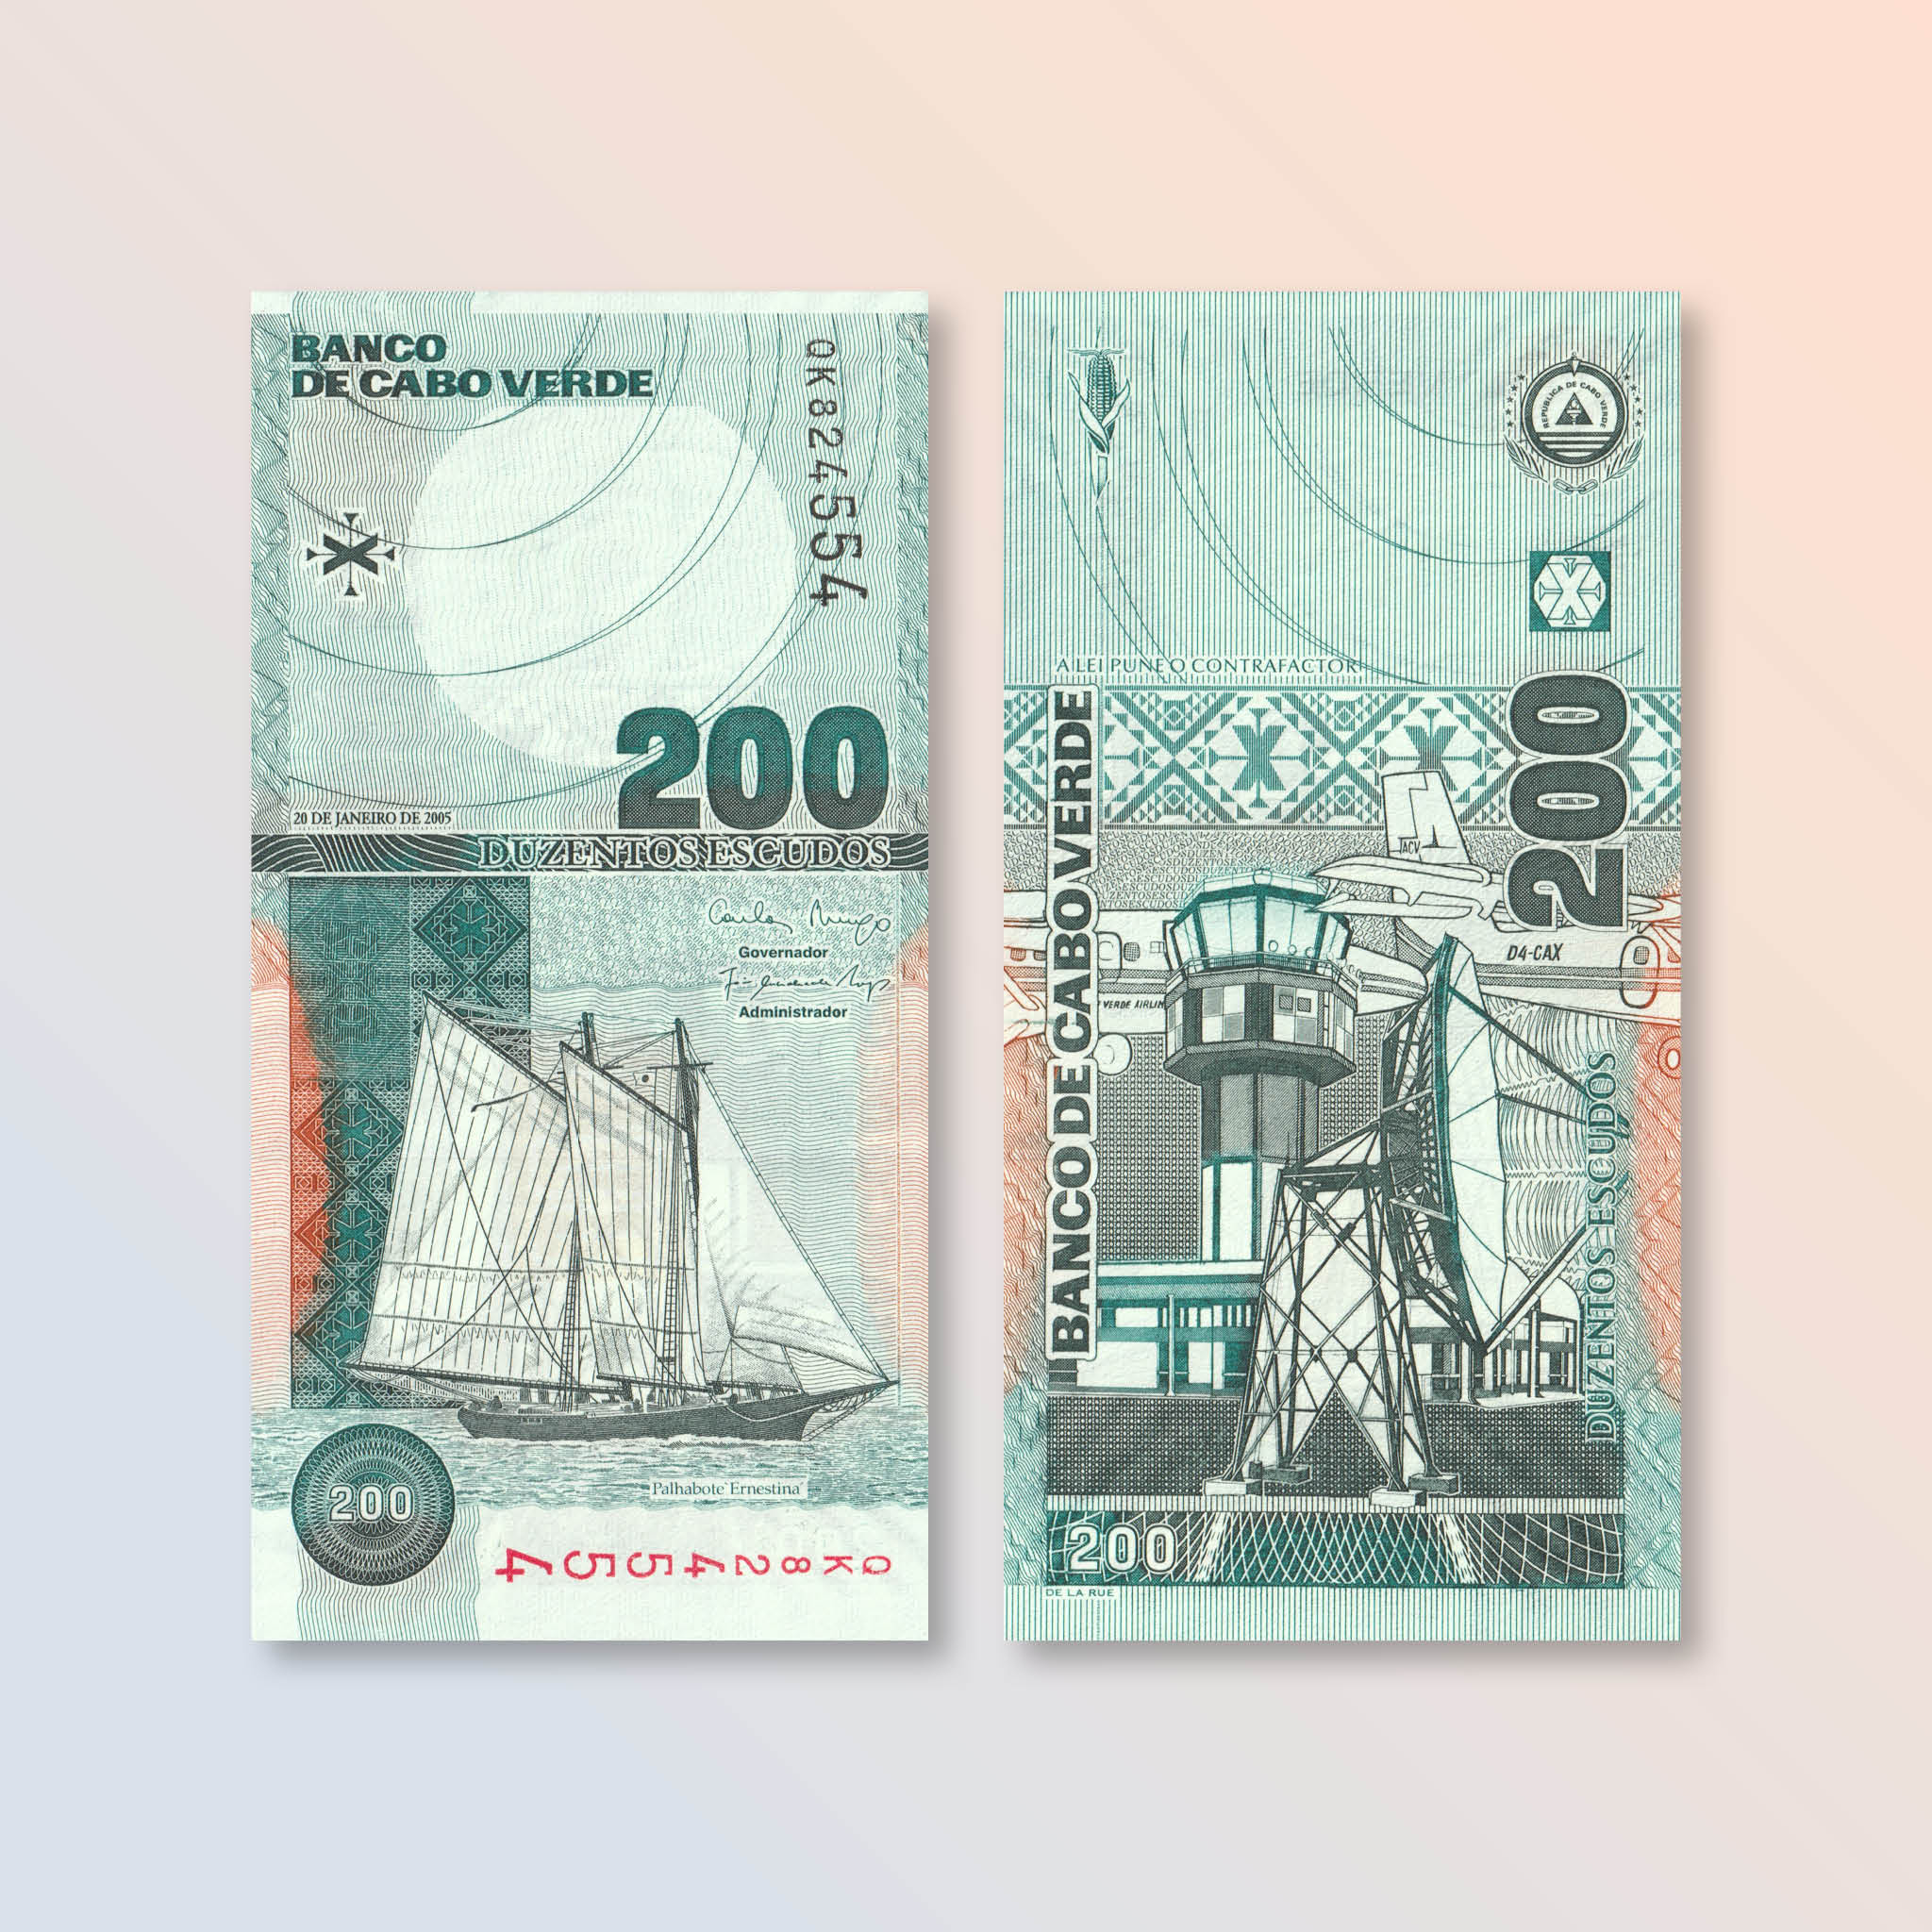 Cape Verde 200 Escudos, 2005, B212a, P68a, UNC - Robert's World Money - World Banknotes